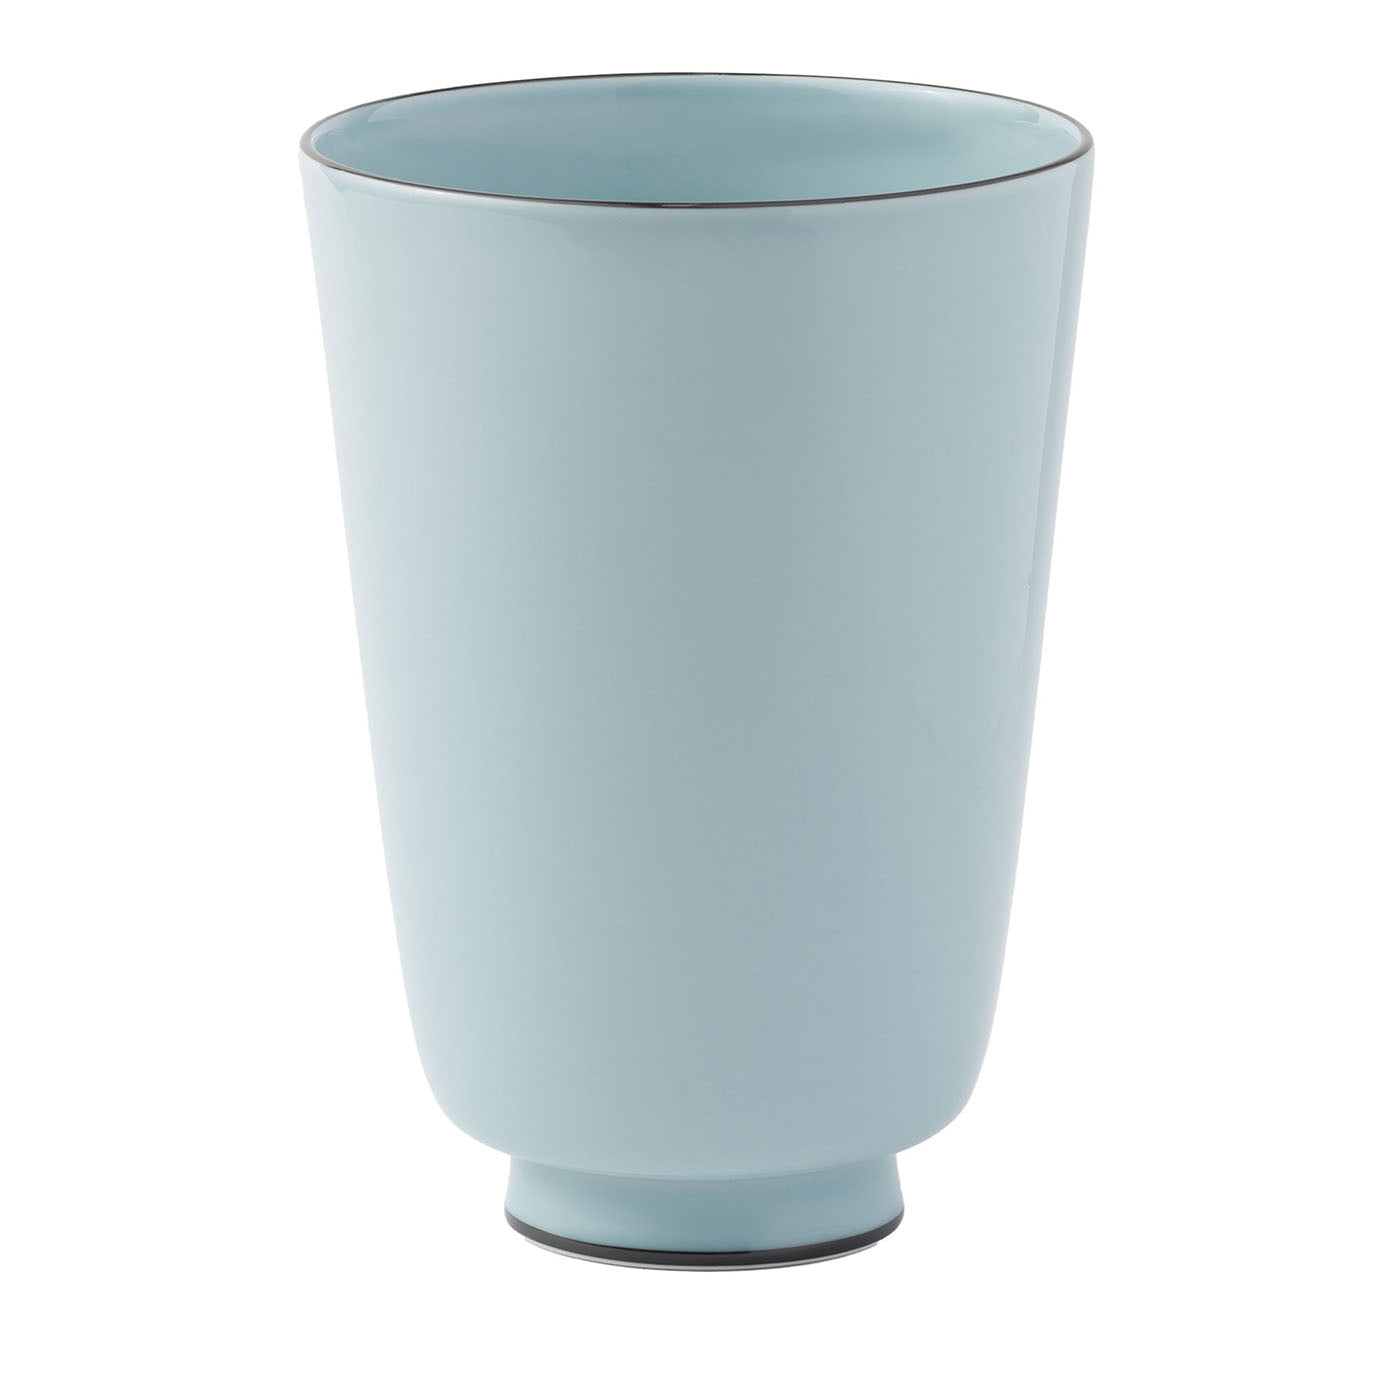 Celadon Porcelain Vase - Main view